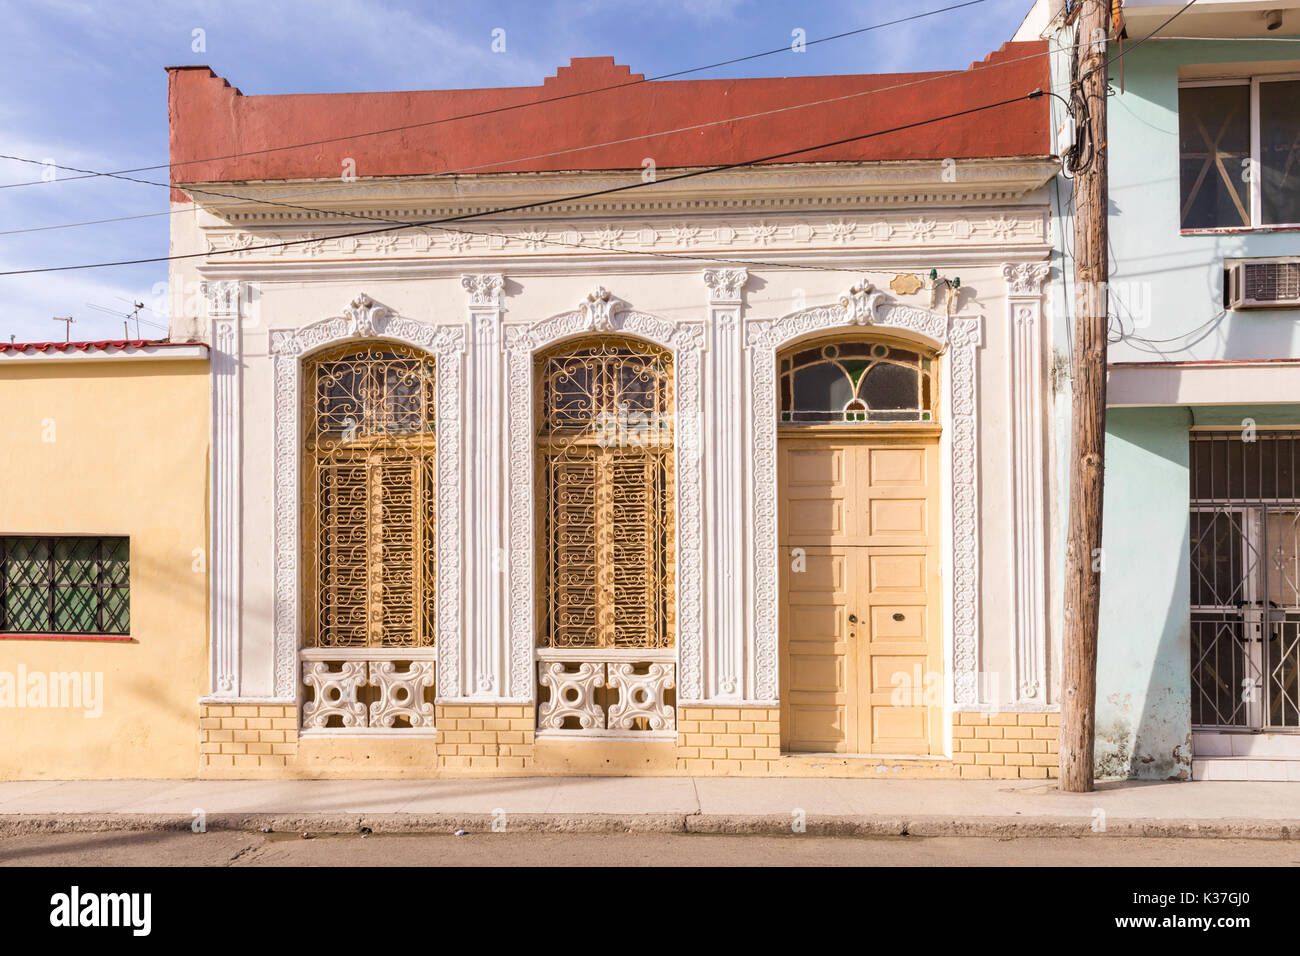 De style colonial architecture locale cubaine sur immeuble résidentiel dans Lachourar,La Havane, Cuba Banque D'Images